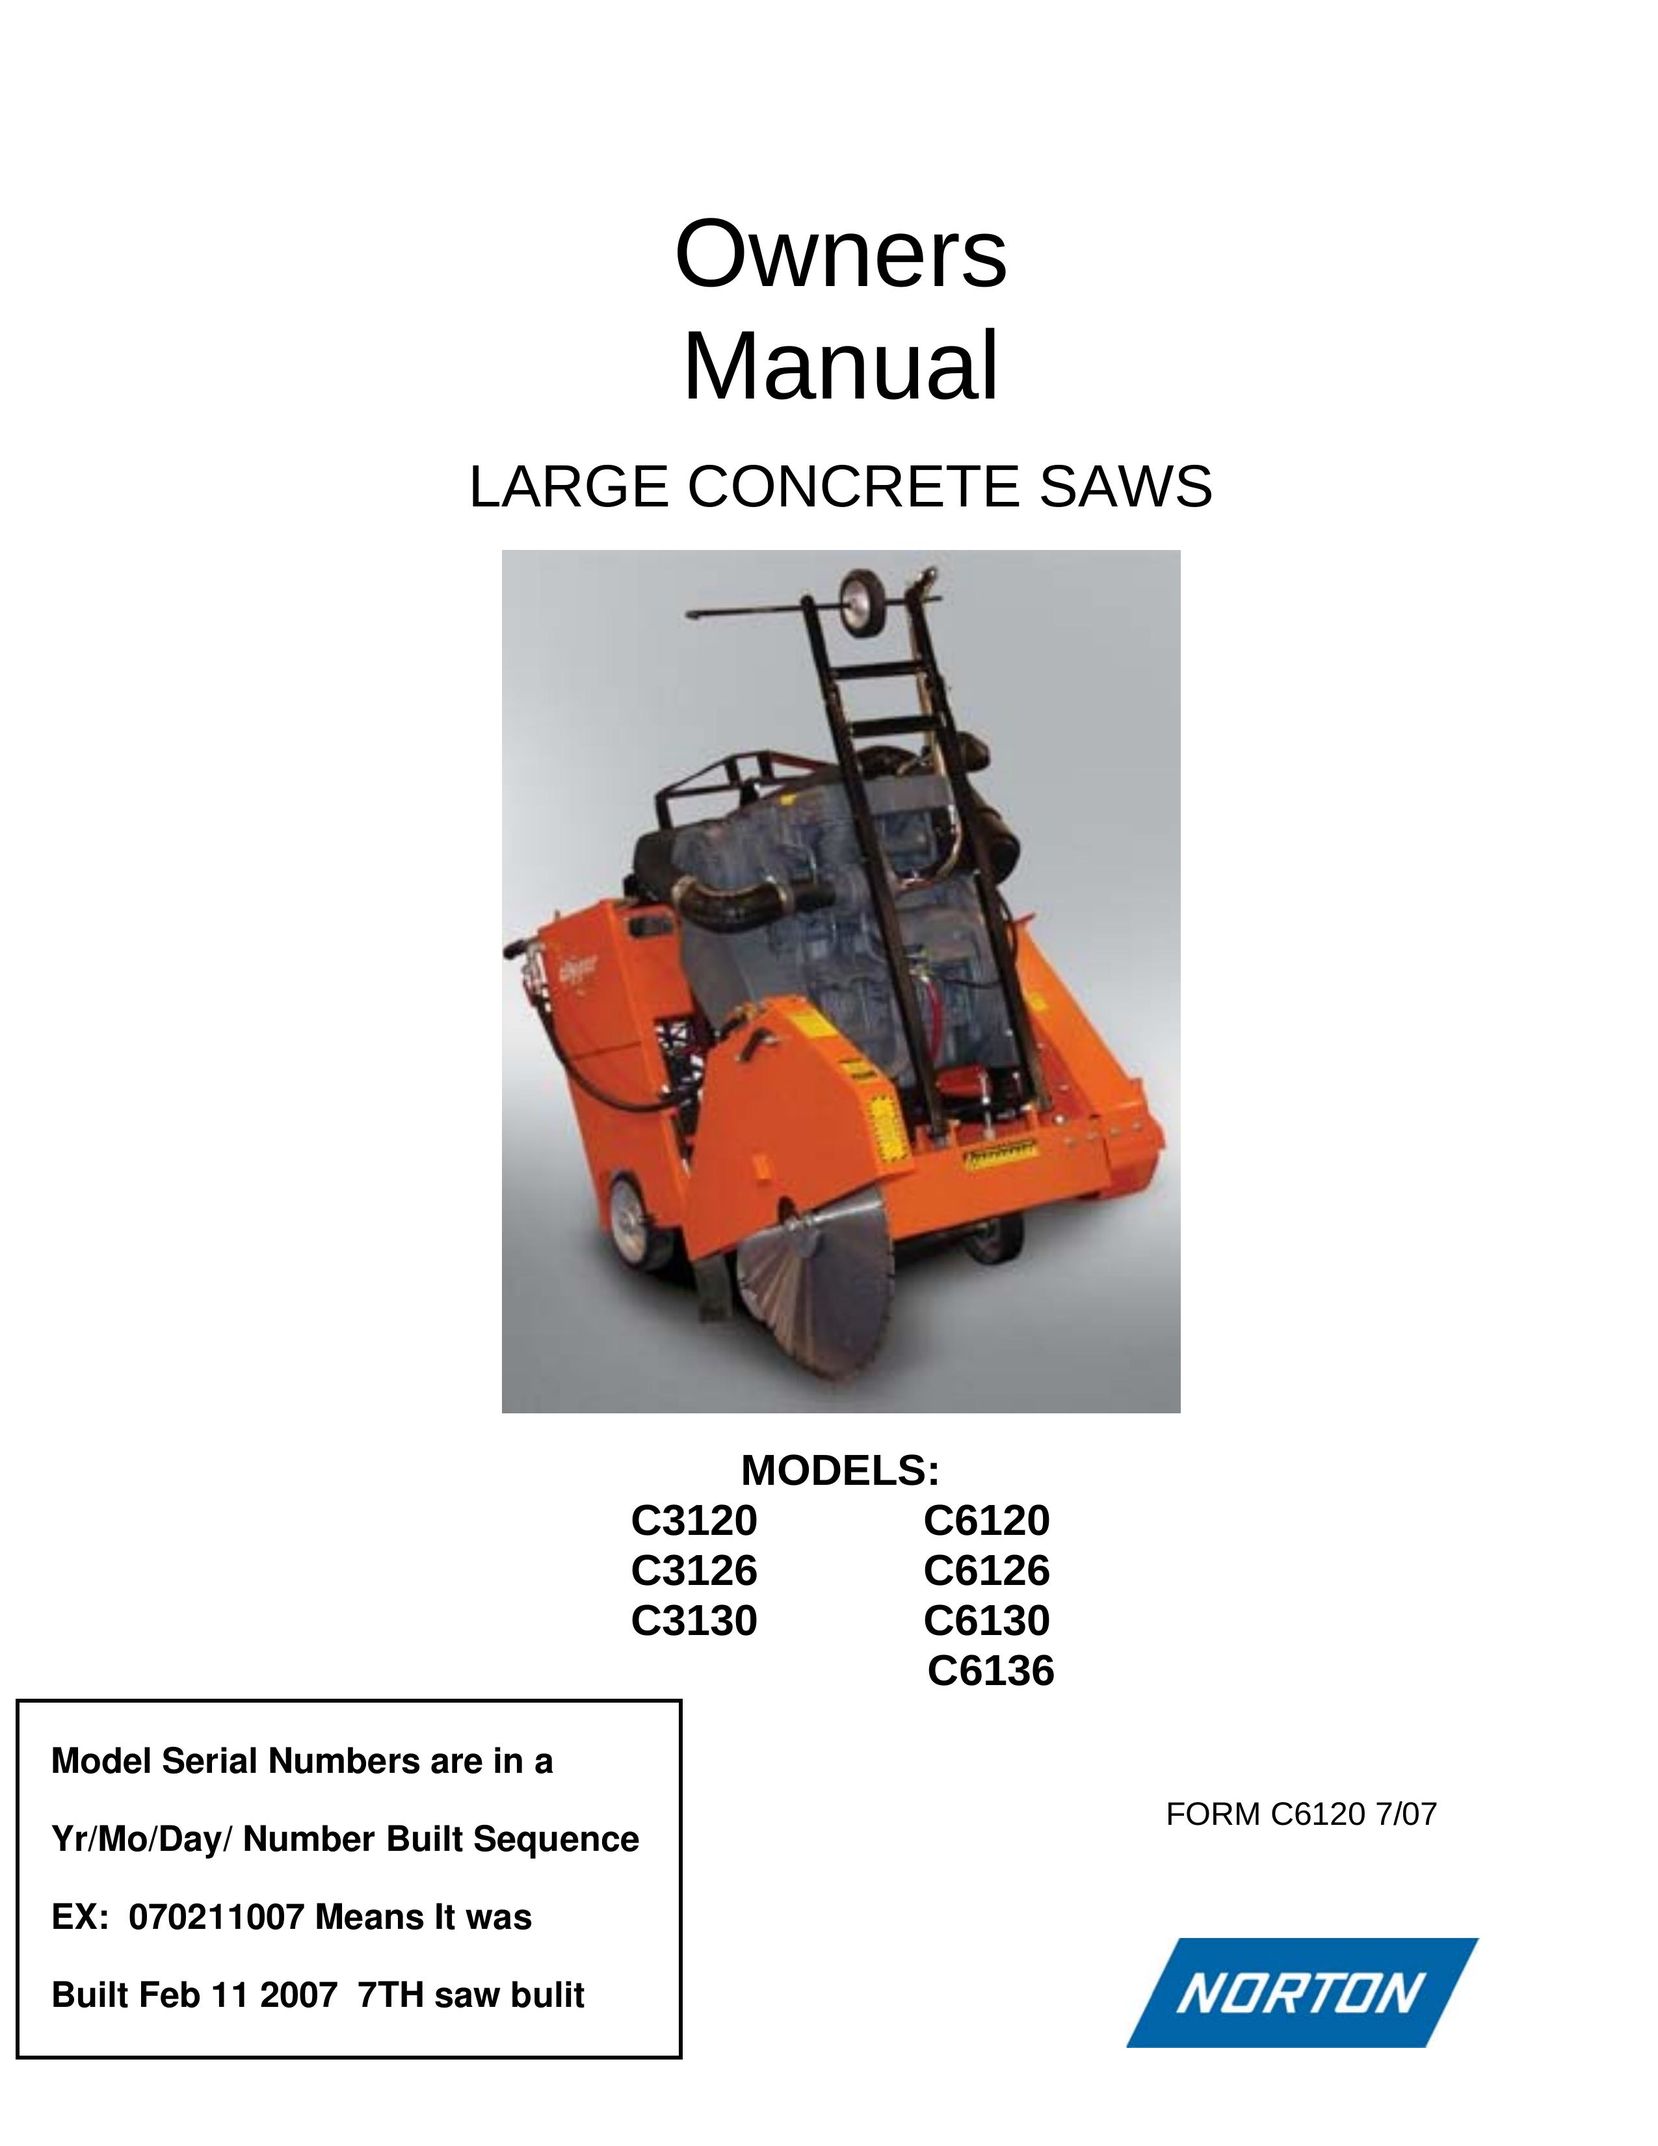 Norton Abrasives C6126 Saw User Manual